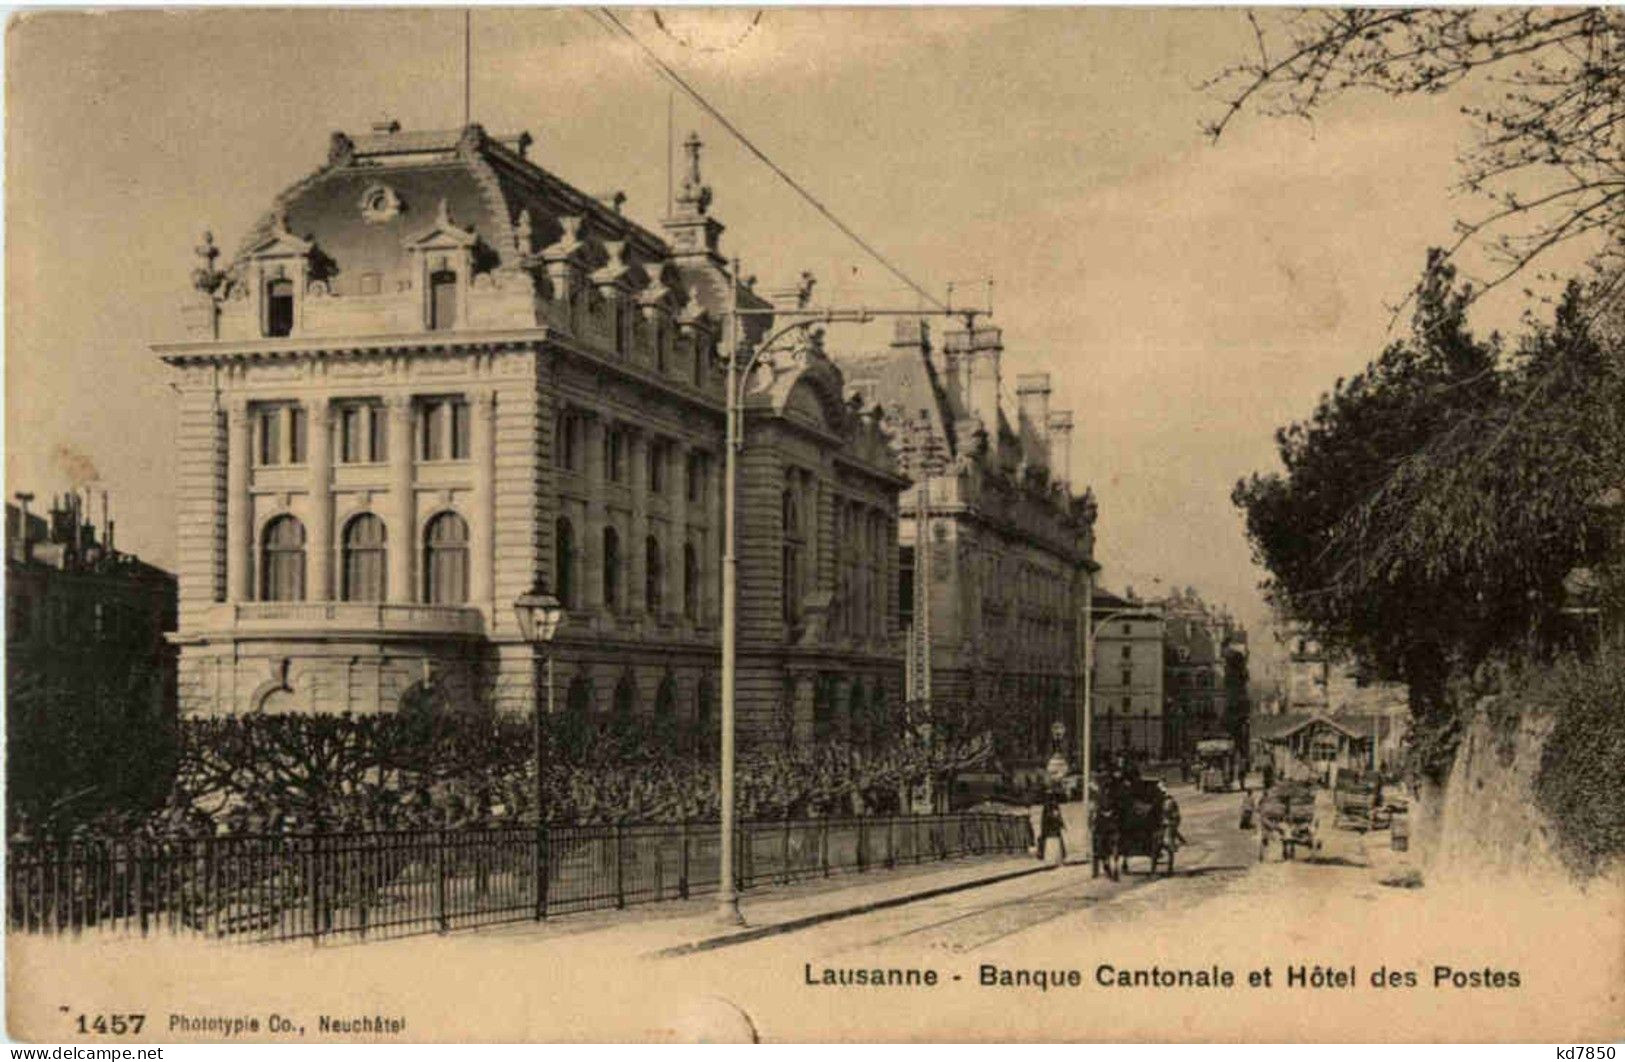 Lausanne - Banque Cantonale - Lausanne